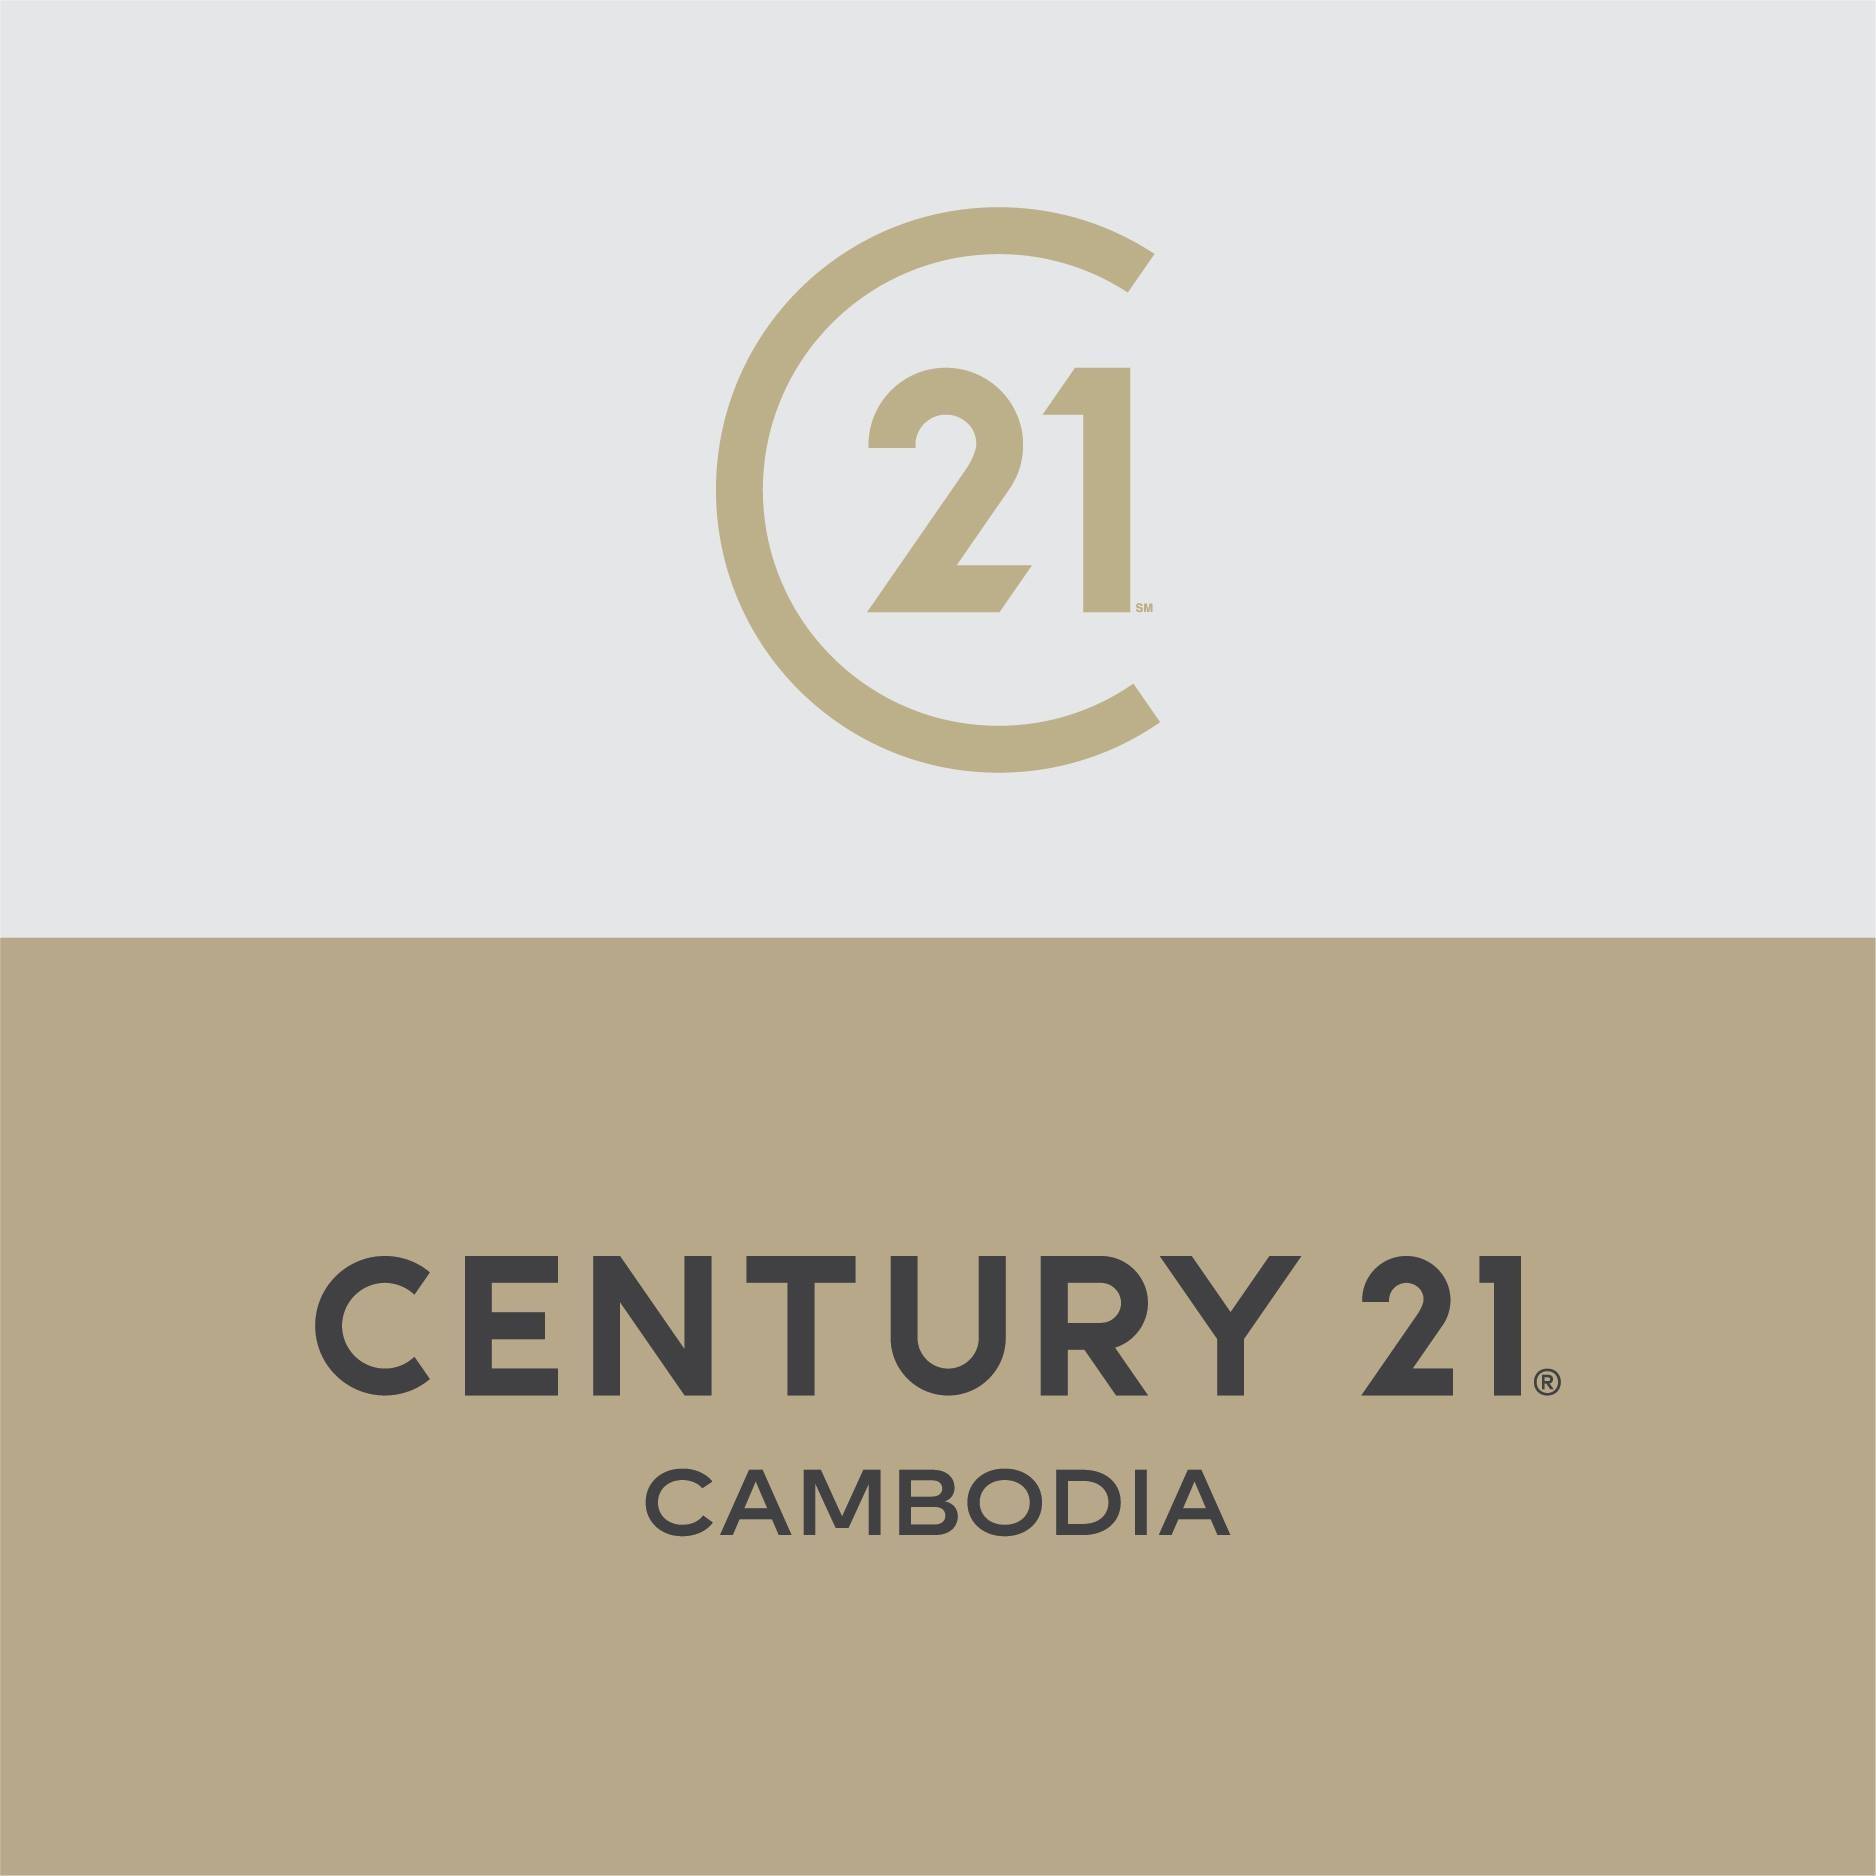 Century 21 Cambodia